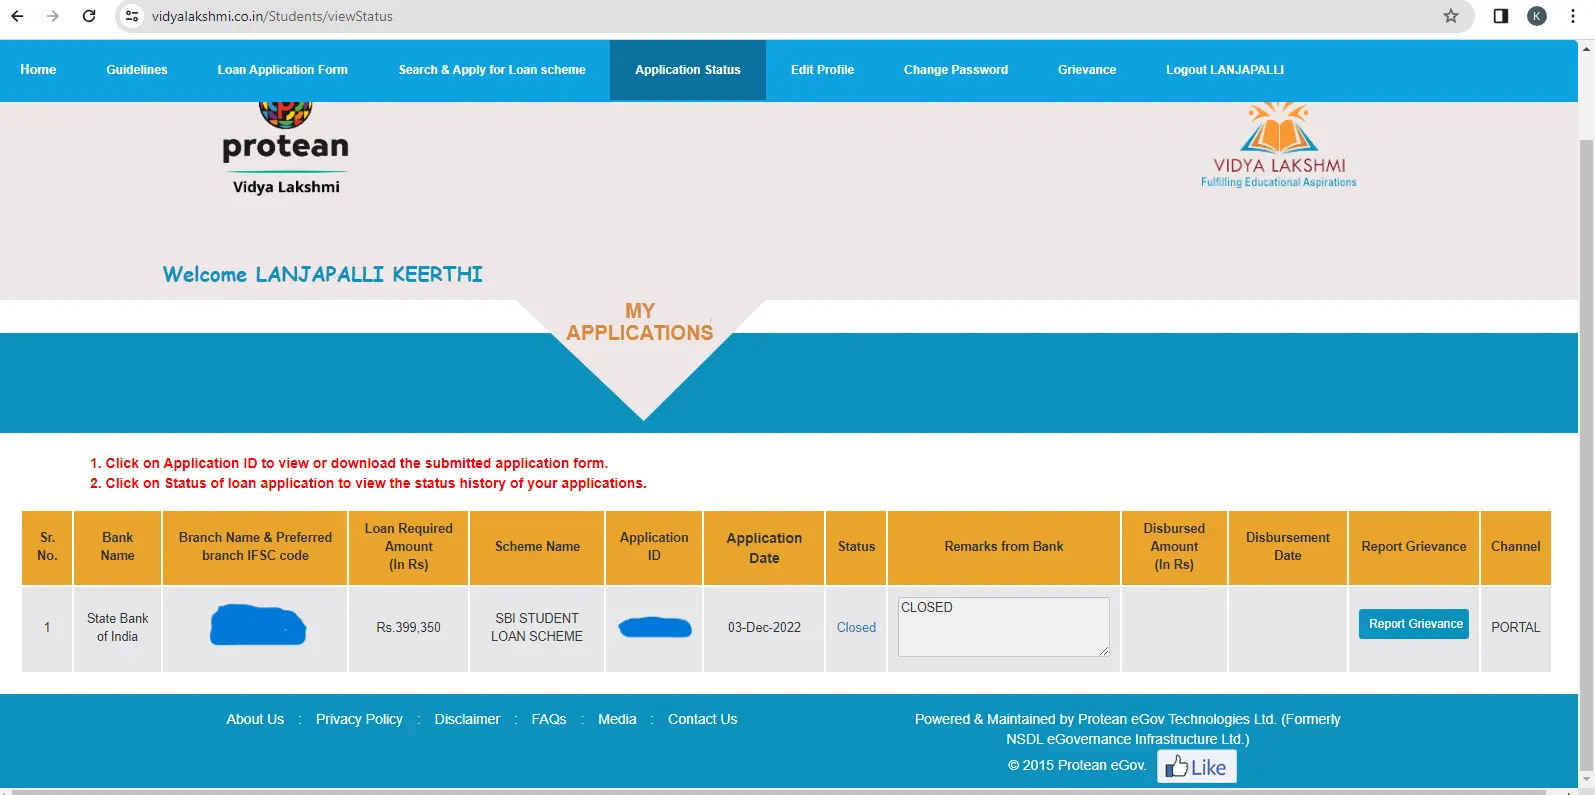 vidya lakshmi portal check education loan application status